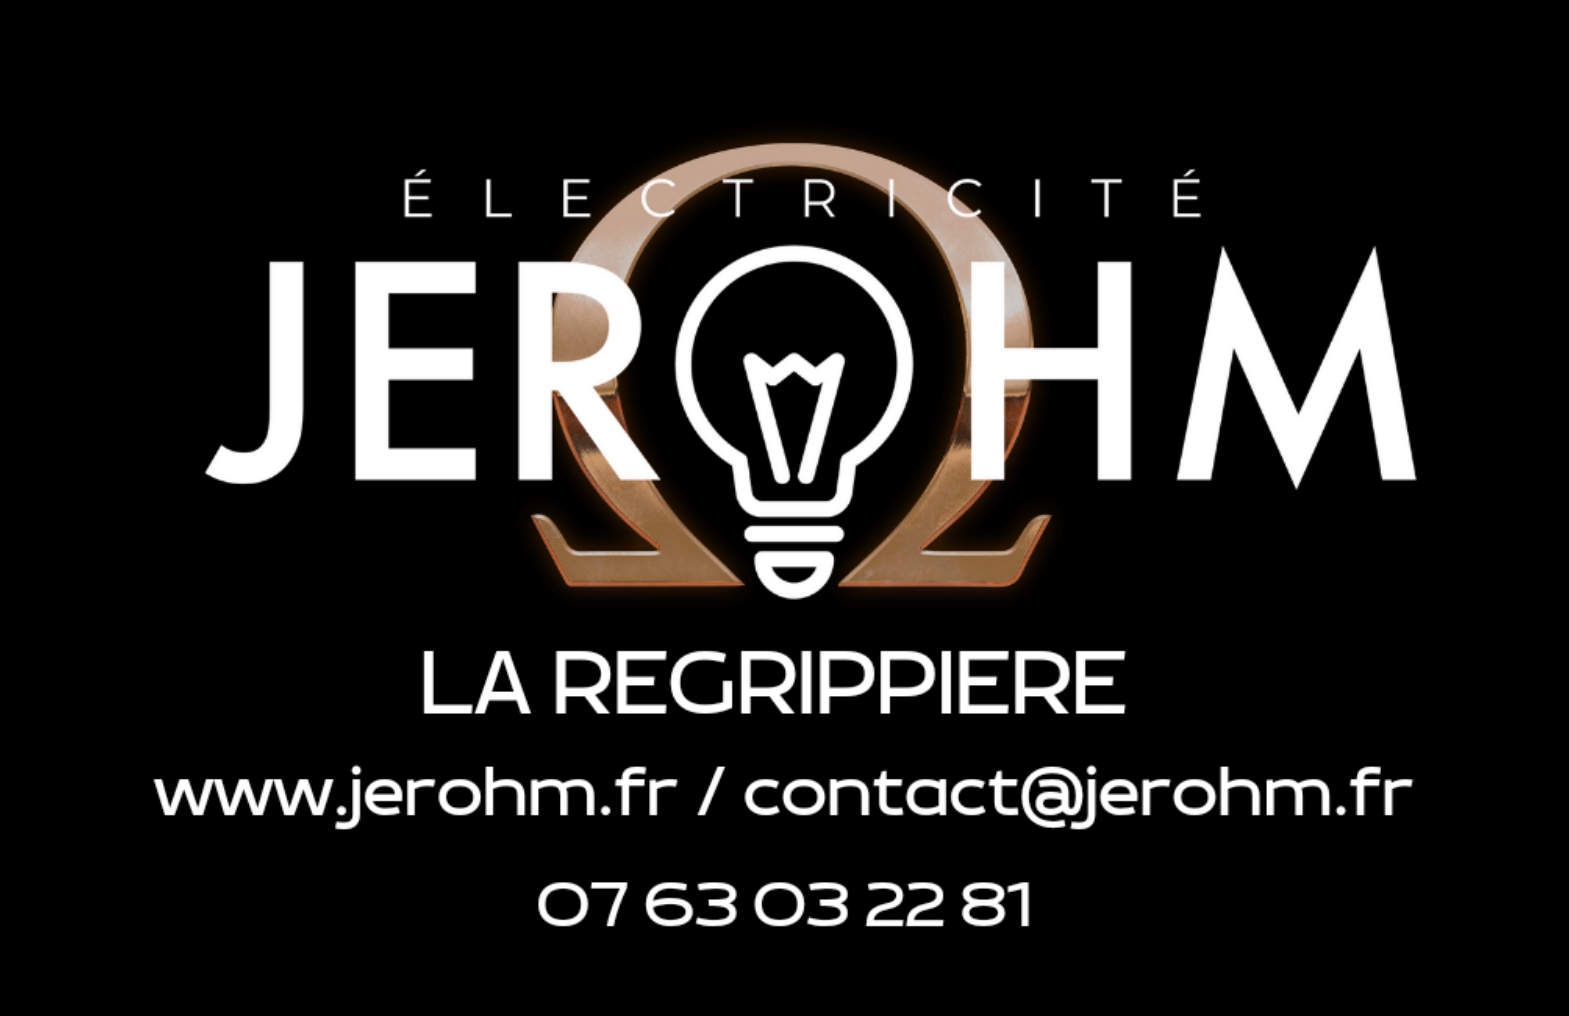 Carte de visite Jerohm électricien_page-0001.jpg